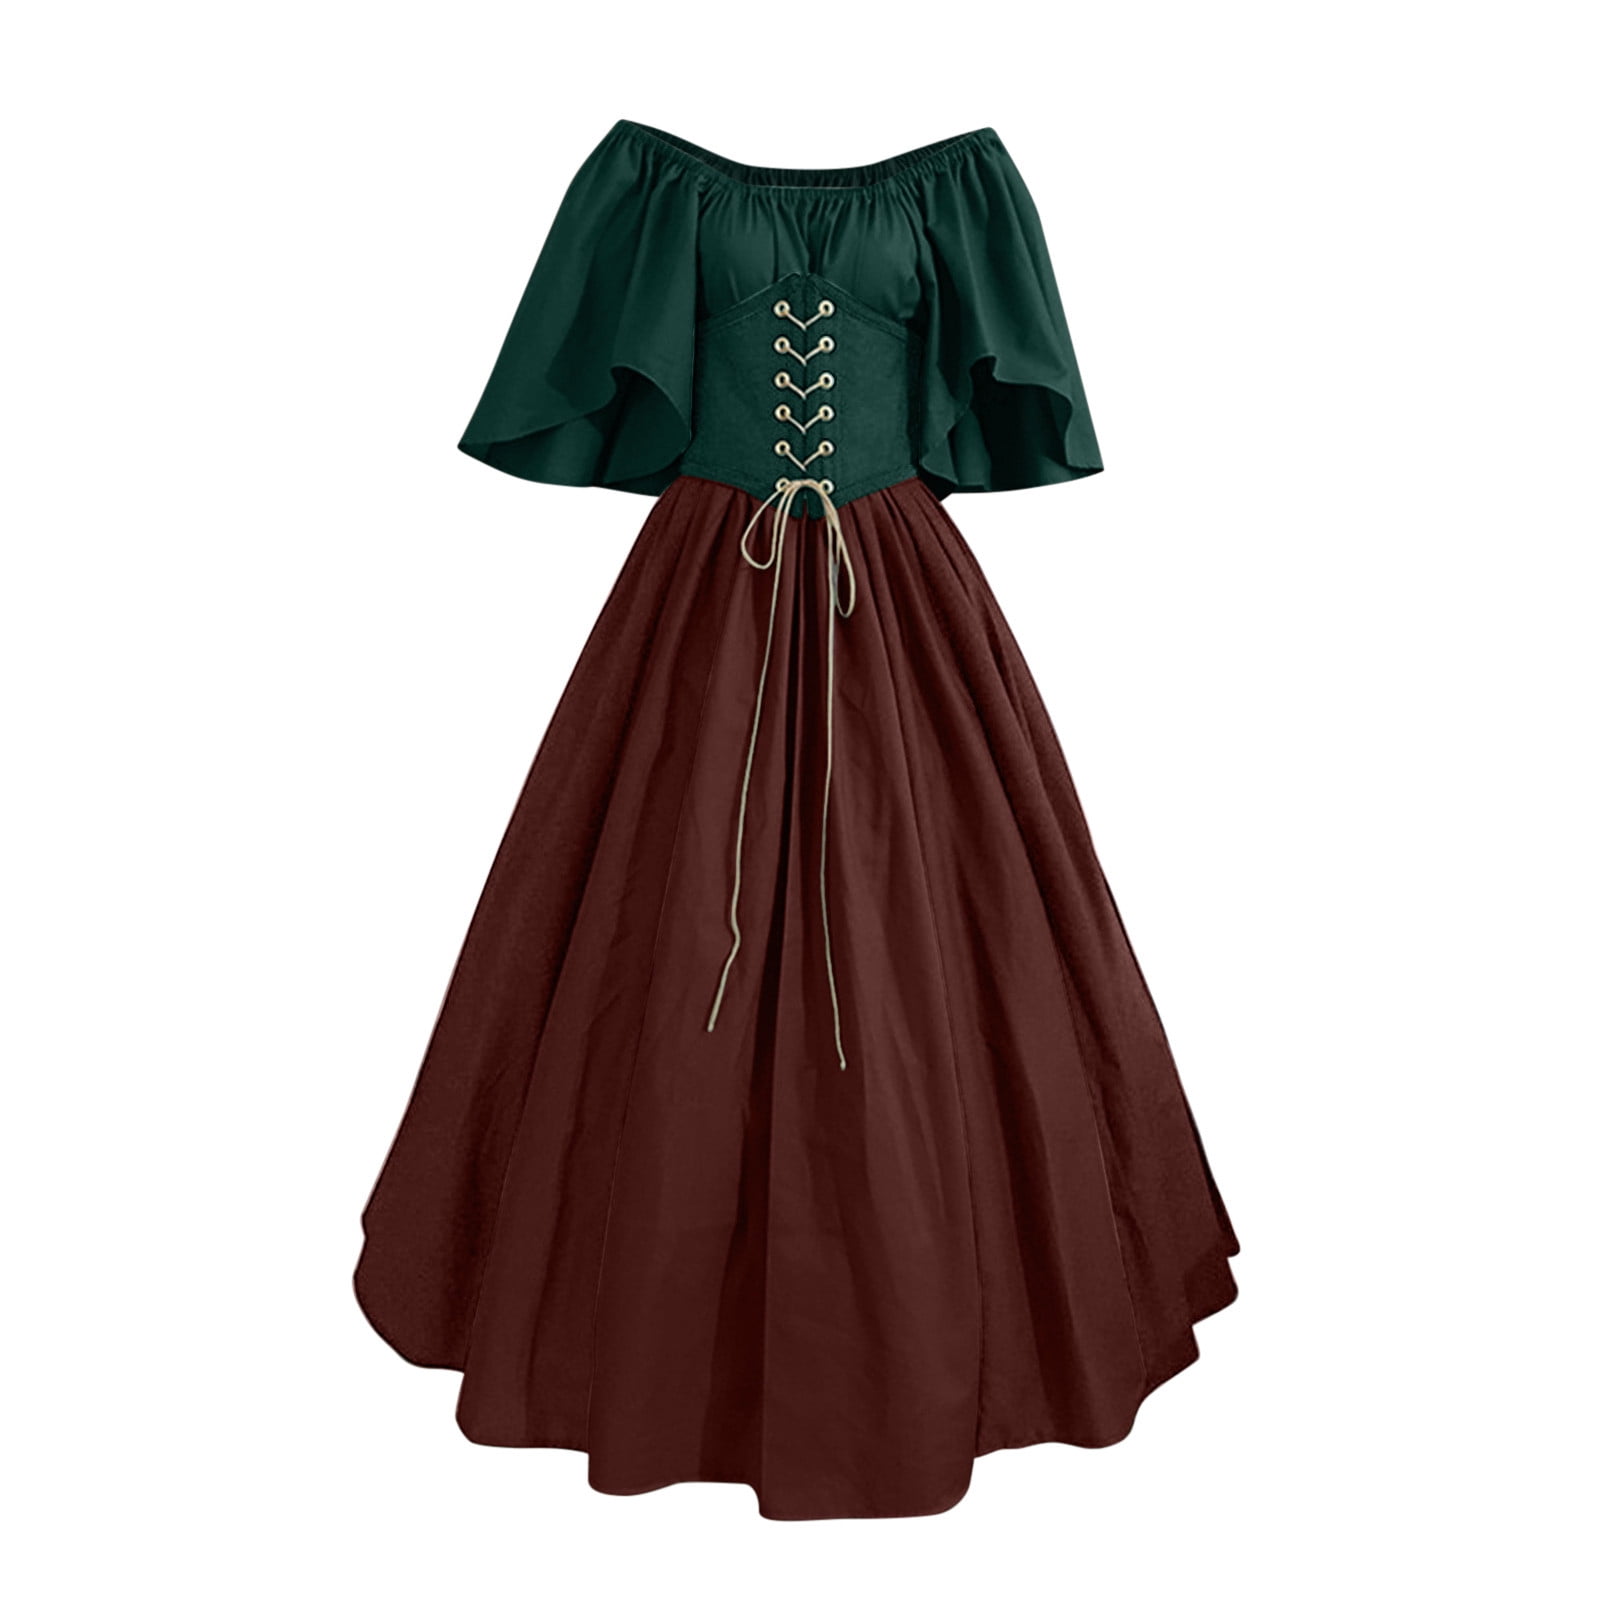  ABABC Plus Size Medieval Dress for Women Renaissance